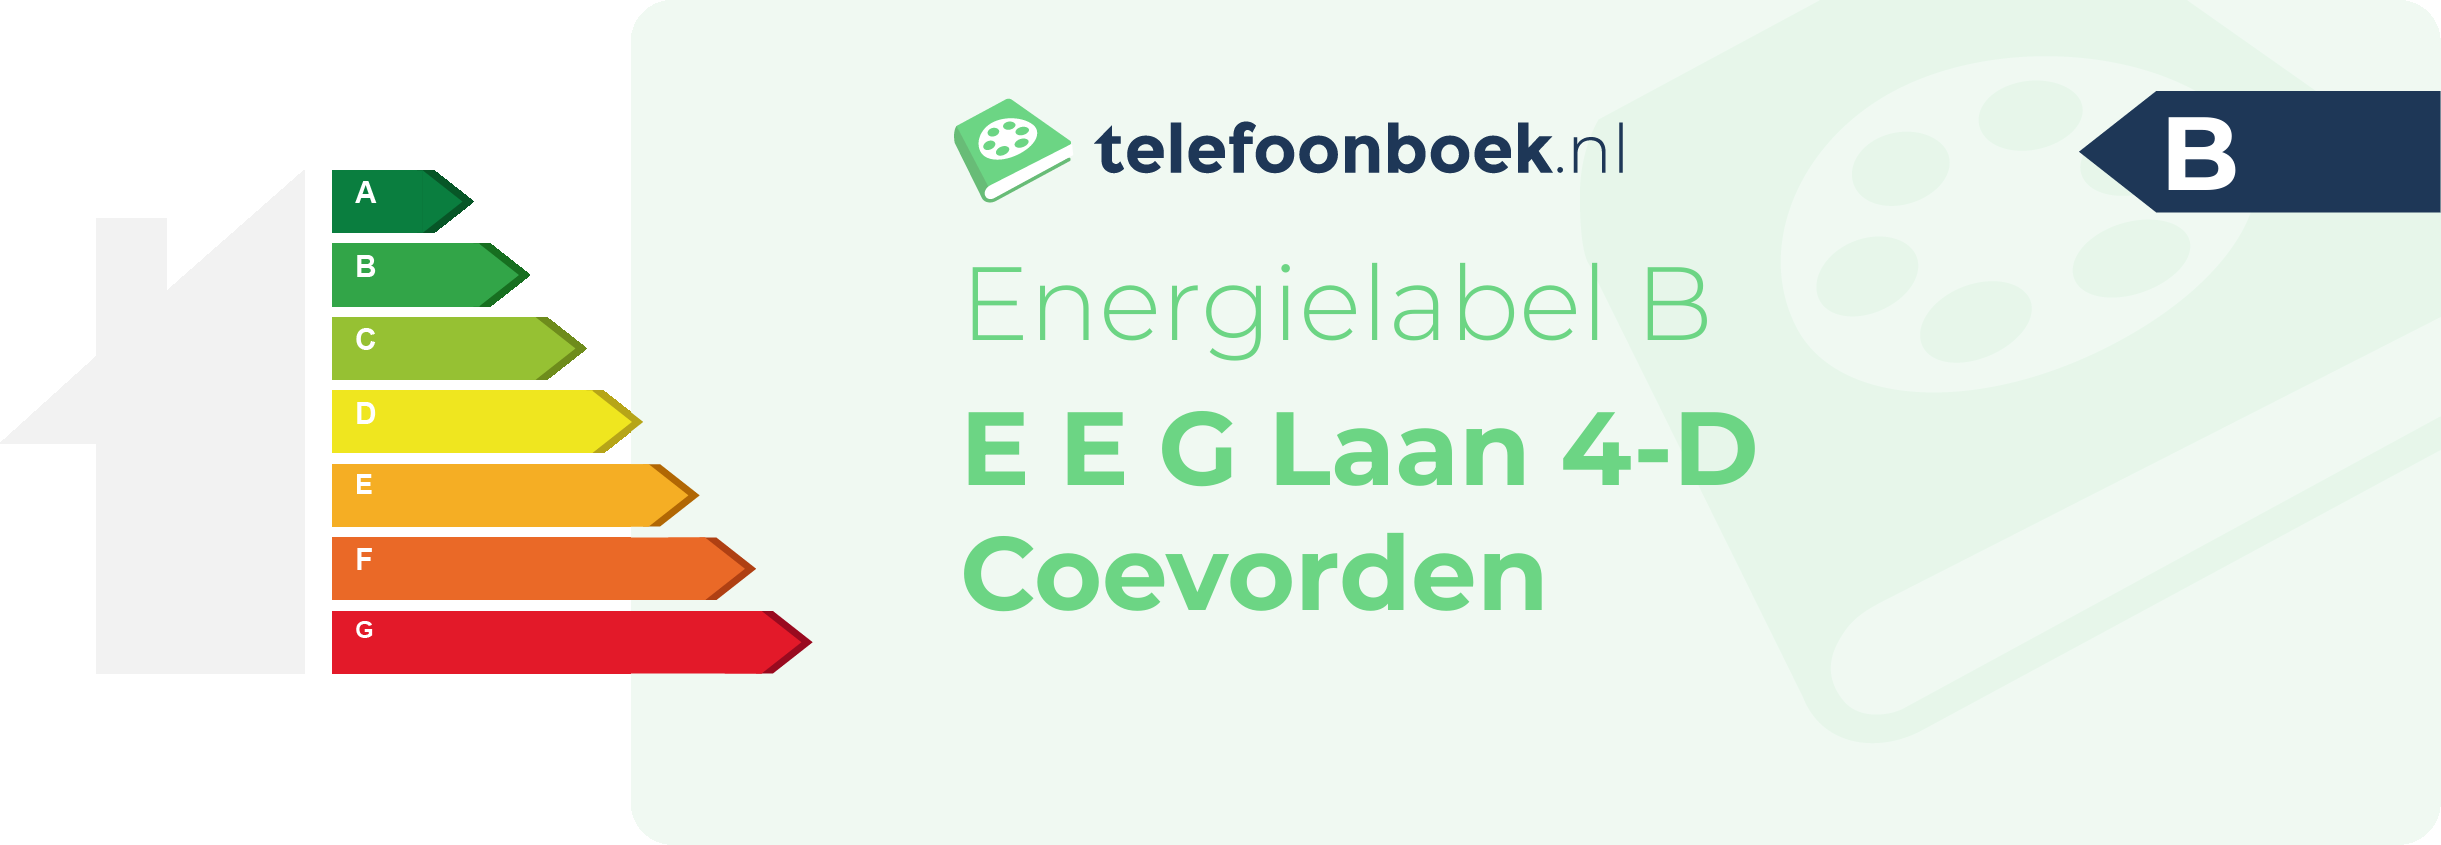 Energielabel E E G Laan 4-D Coevorden